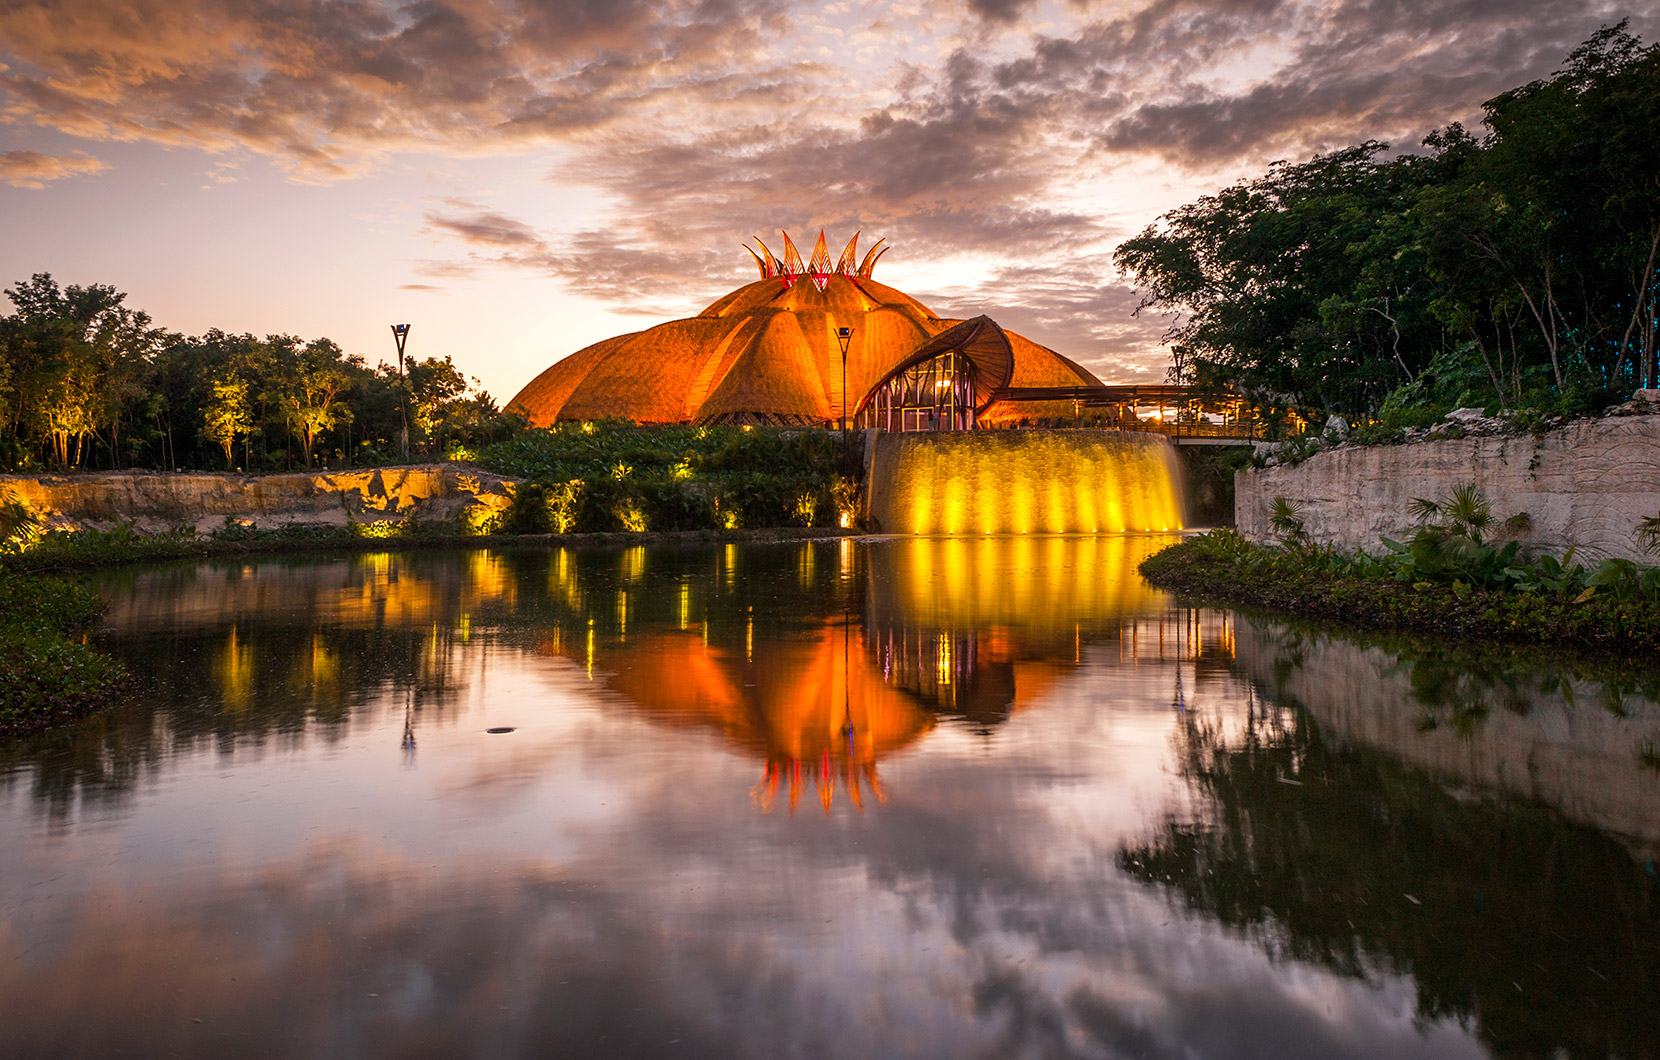 : La arquitectura del Teatro del Cirque du Soleil, es una creación ganadora de premios.